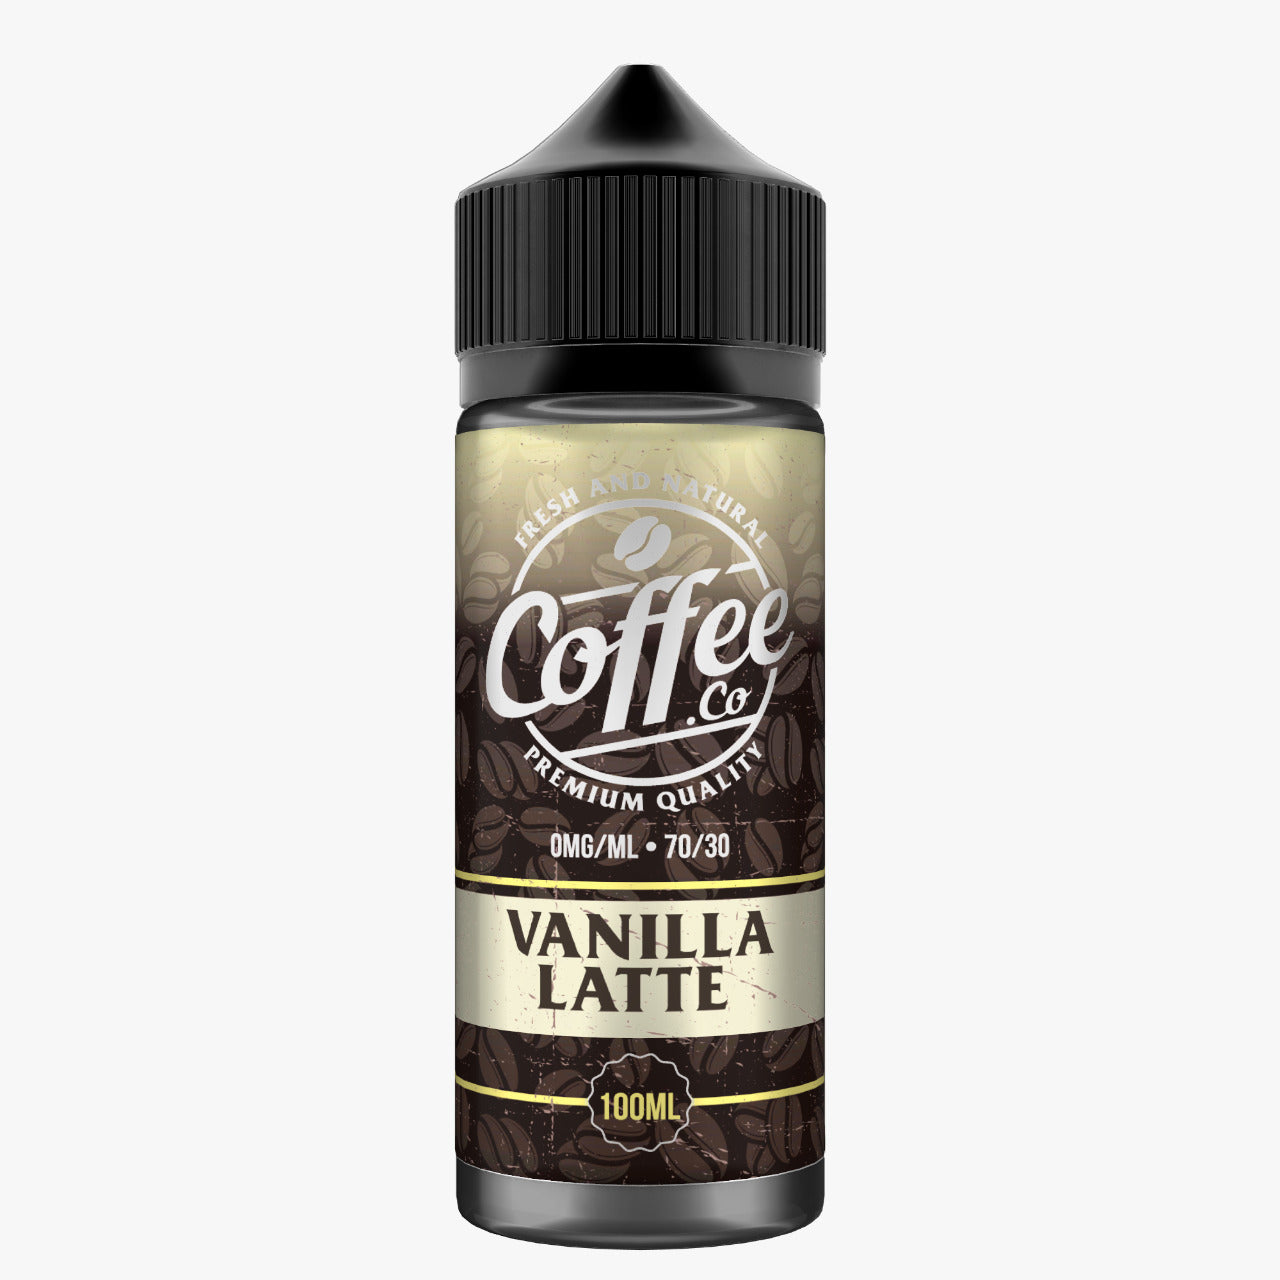 VANILLA LATTE 100ML E LIQUID COFFEE CO